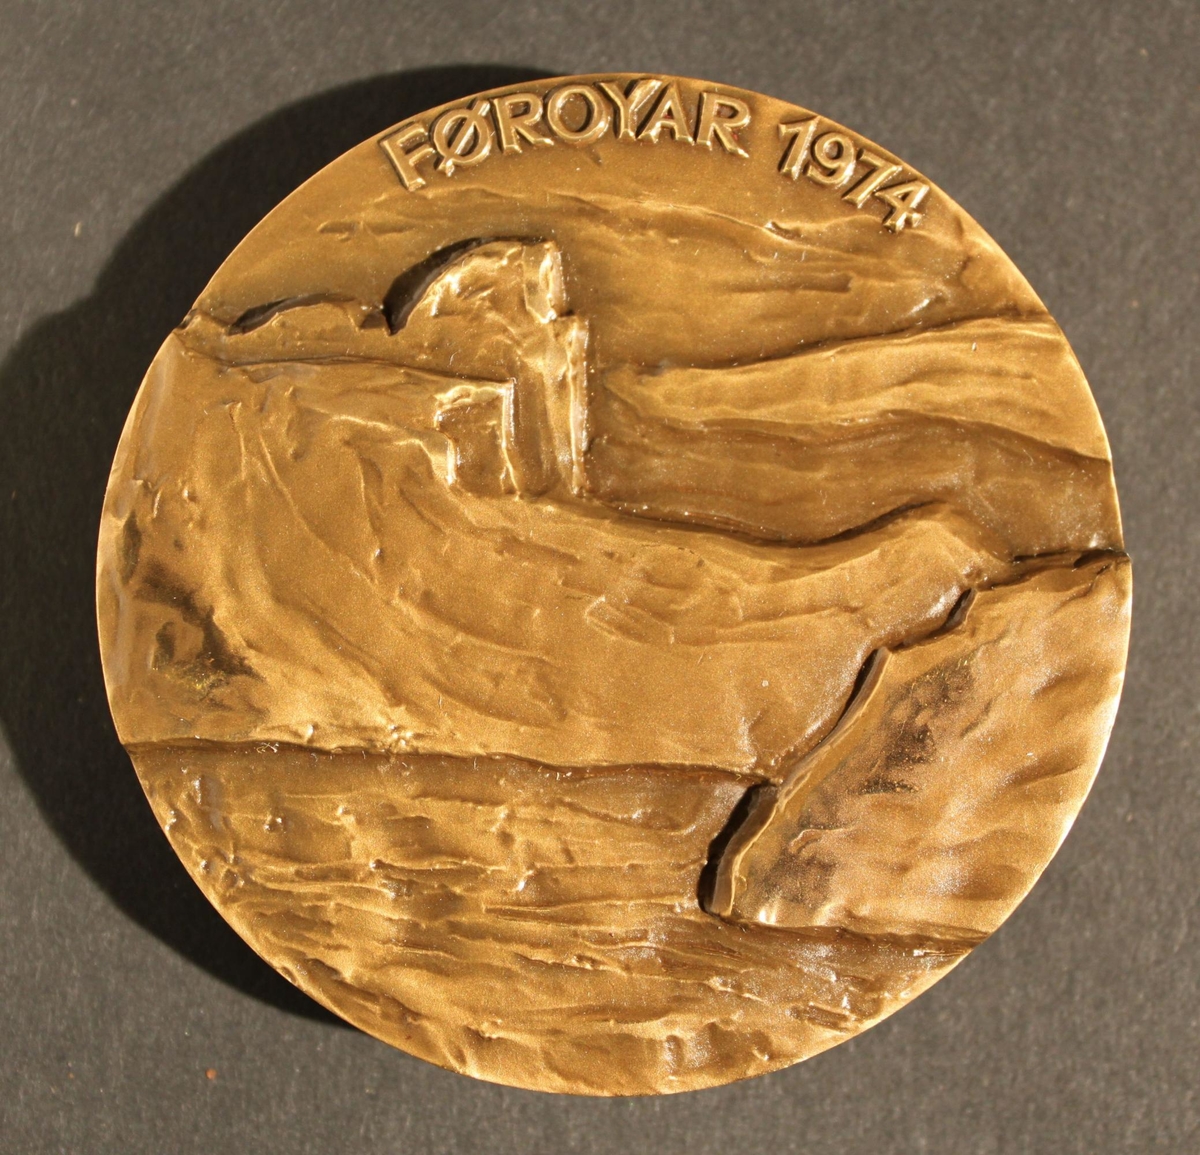 Medalj i brons, rund, kallad "Faerömedaljen 1974. Utförd
avSven Havsteen-Mikkelsen. Åtsidan visar utsikten i Lopra
medBeinisvörd samt text enligt MRK. Frånsidan visar utgrävda
grunderfrån fem kyrkor samt konstnärens signatur. Svart etui
ochmedaljstativ medföljer.